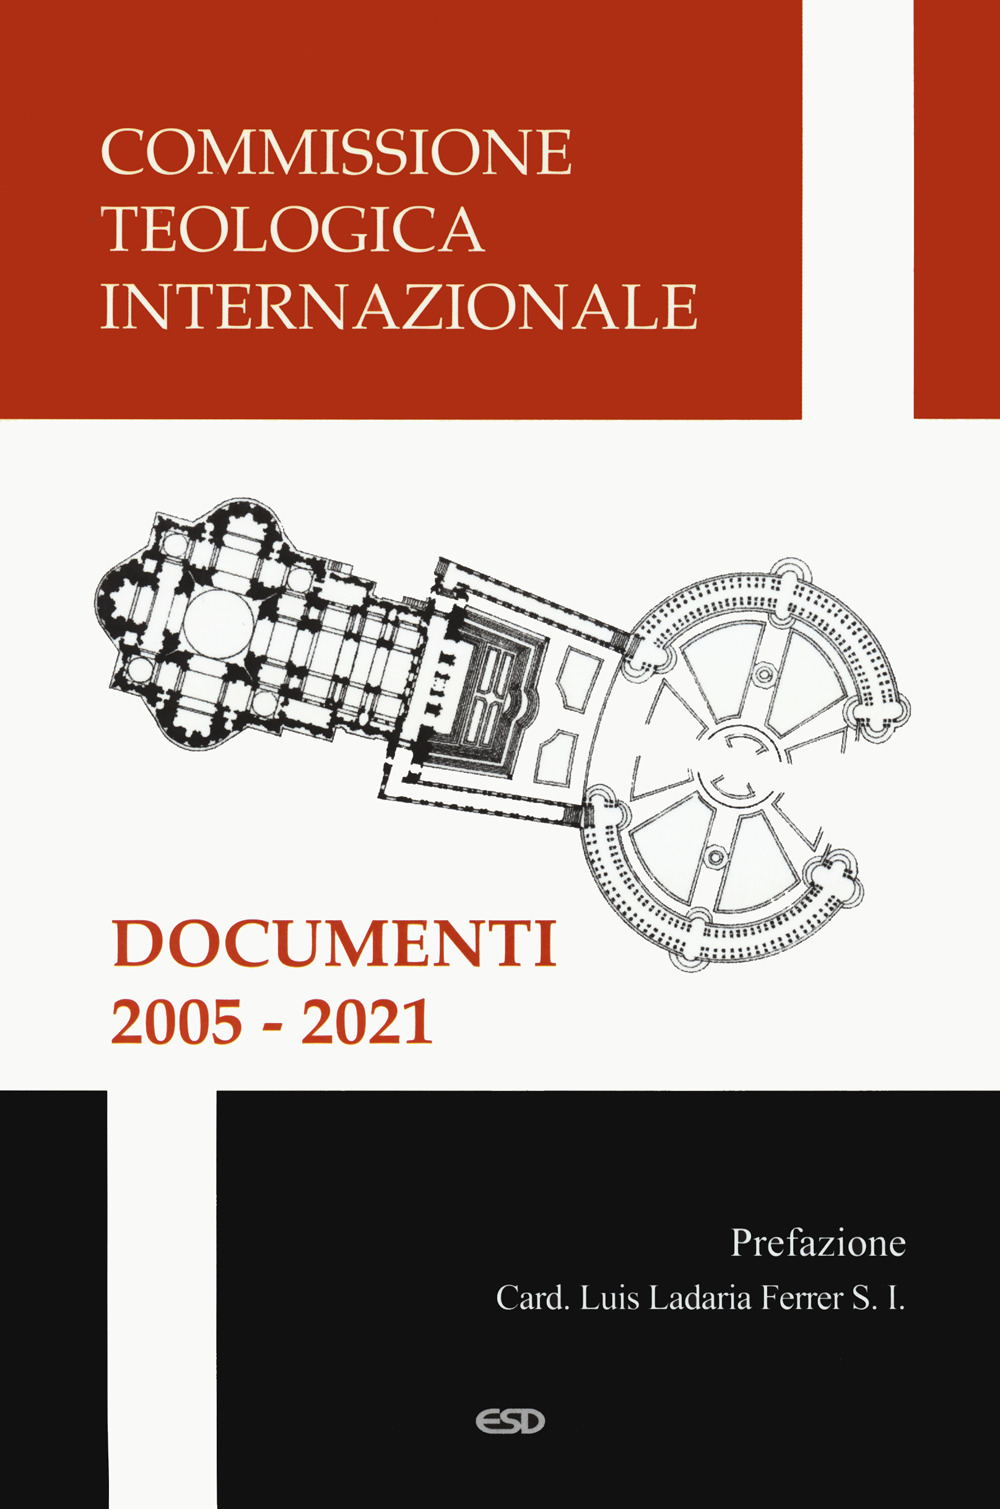 Documenti 2005-2021